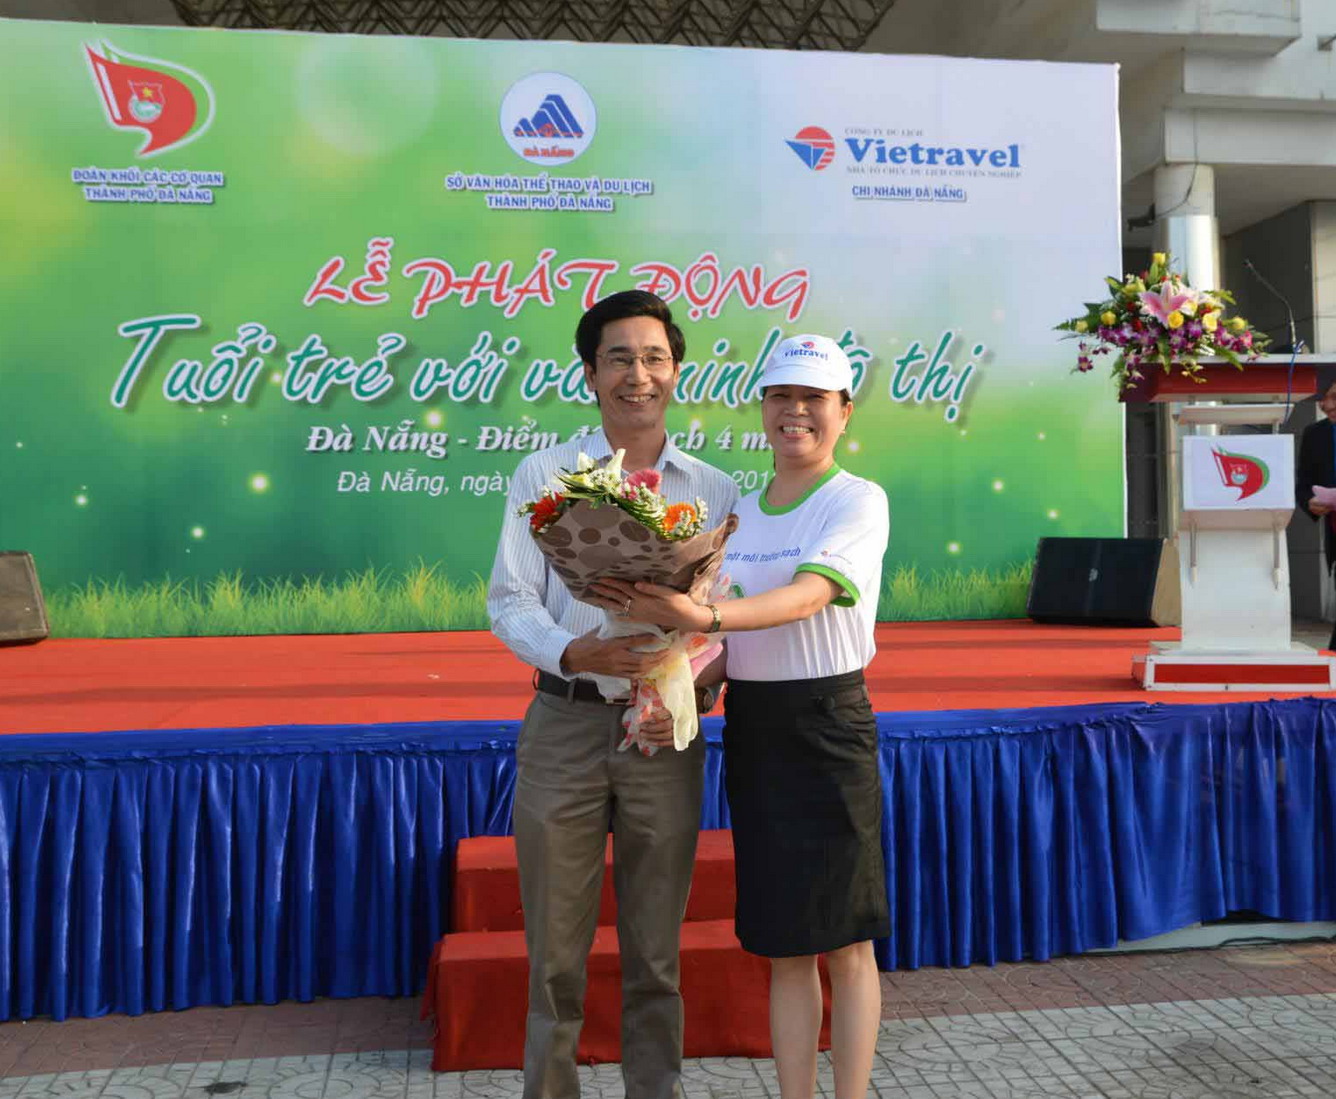 Vietravel Đà Nẵng đồng hành cùng chương trình phát triển du lịch trách nhiệm và bền vững